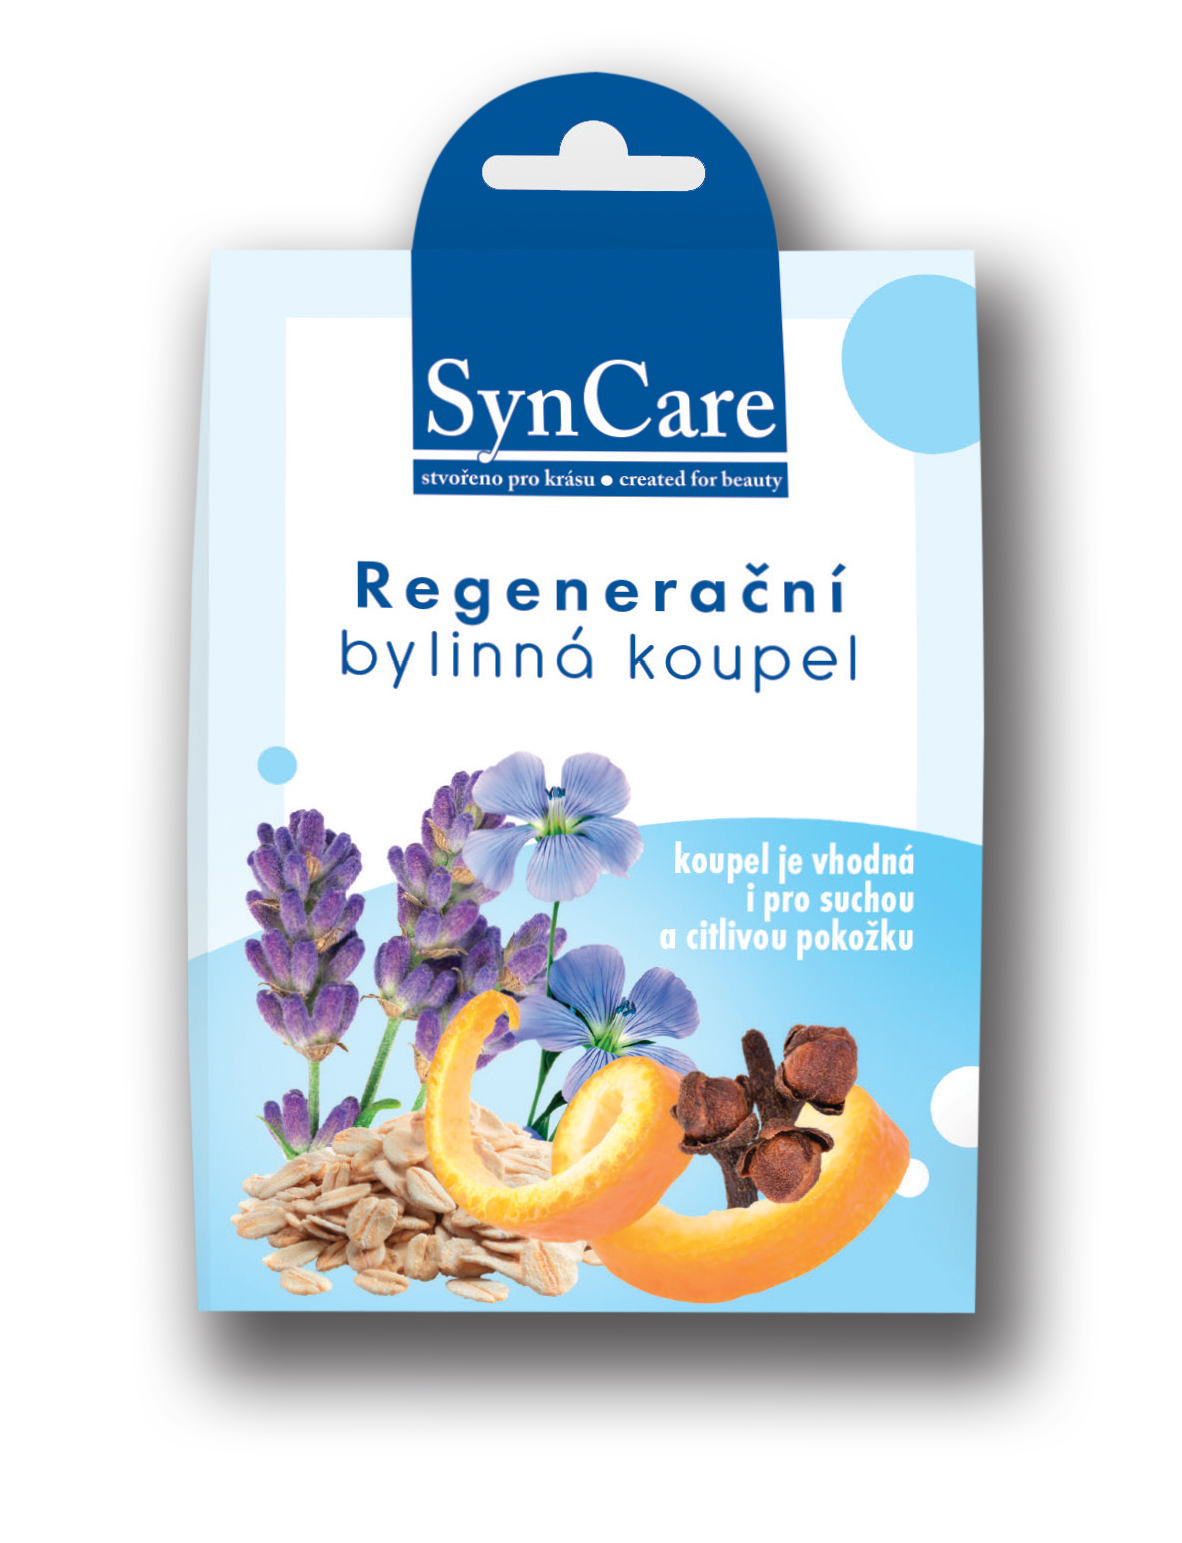 SynCare Regenerační bylinna koupel s mořskou solí 50g